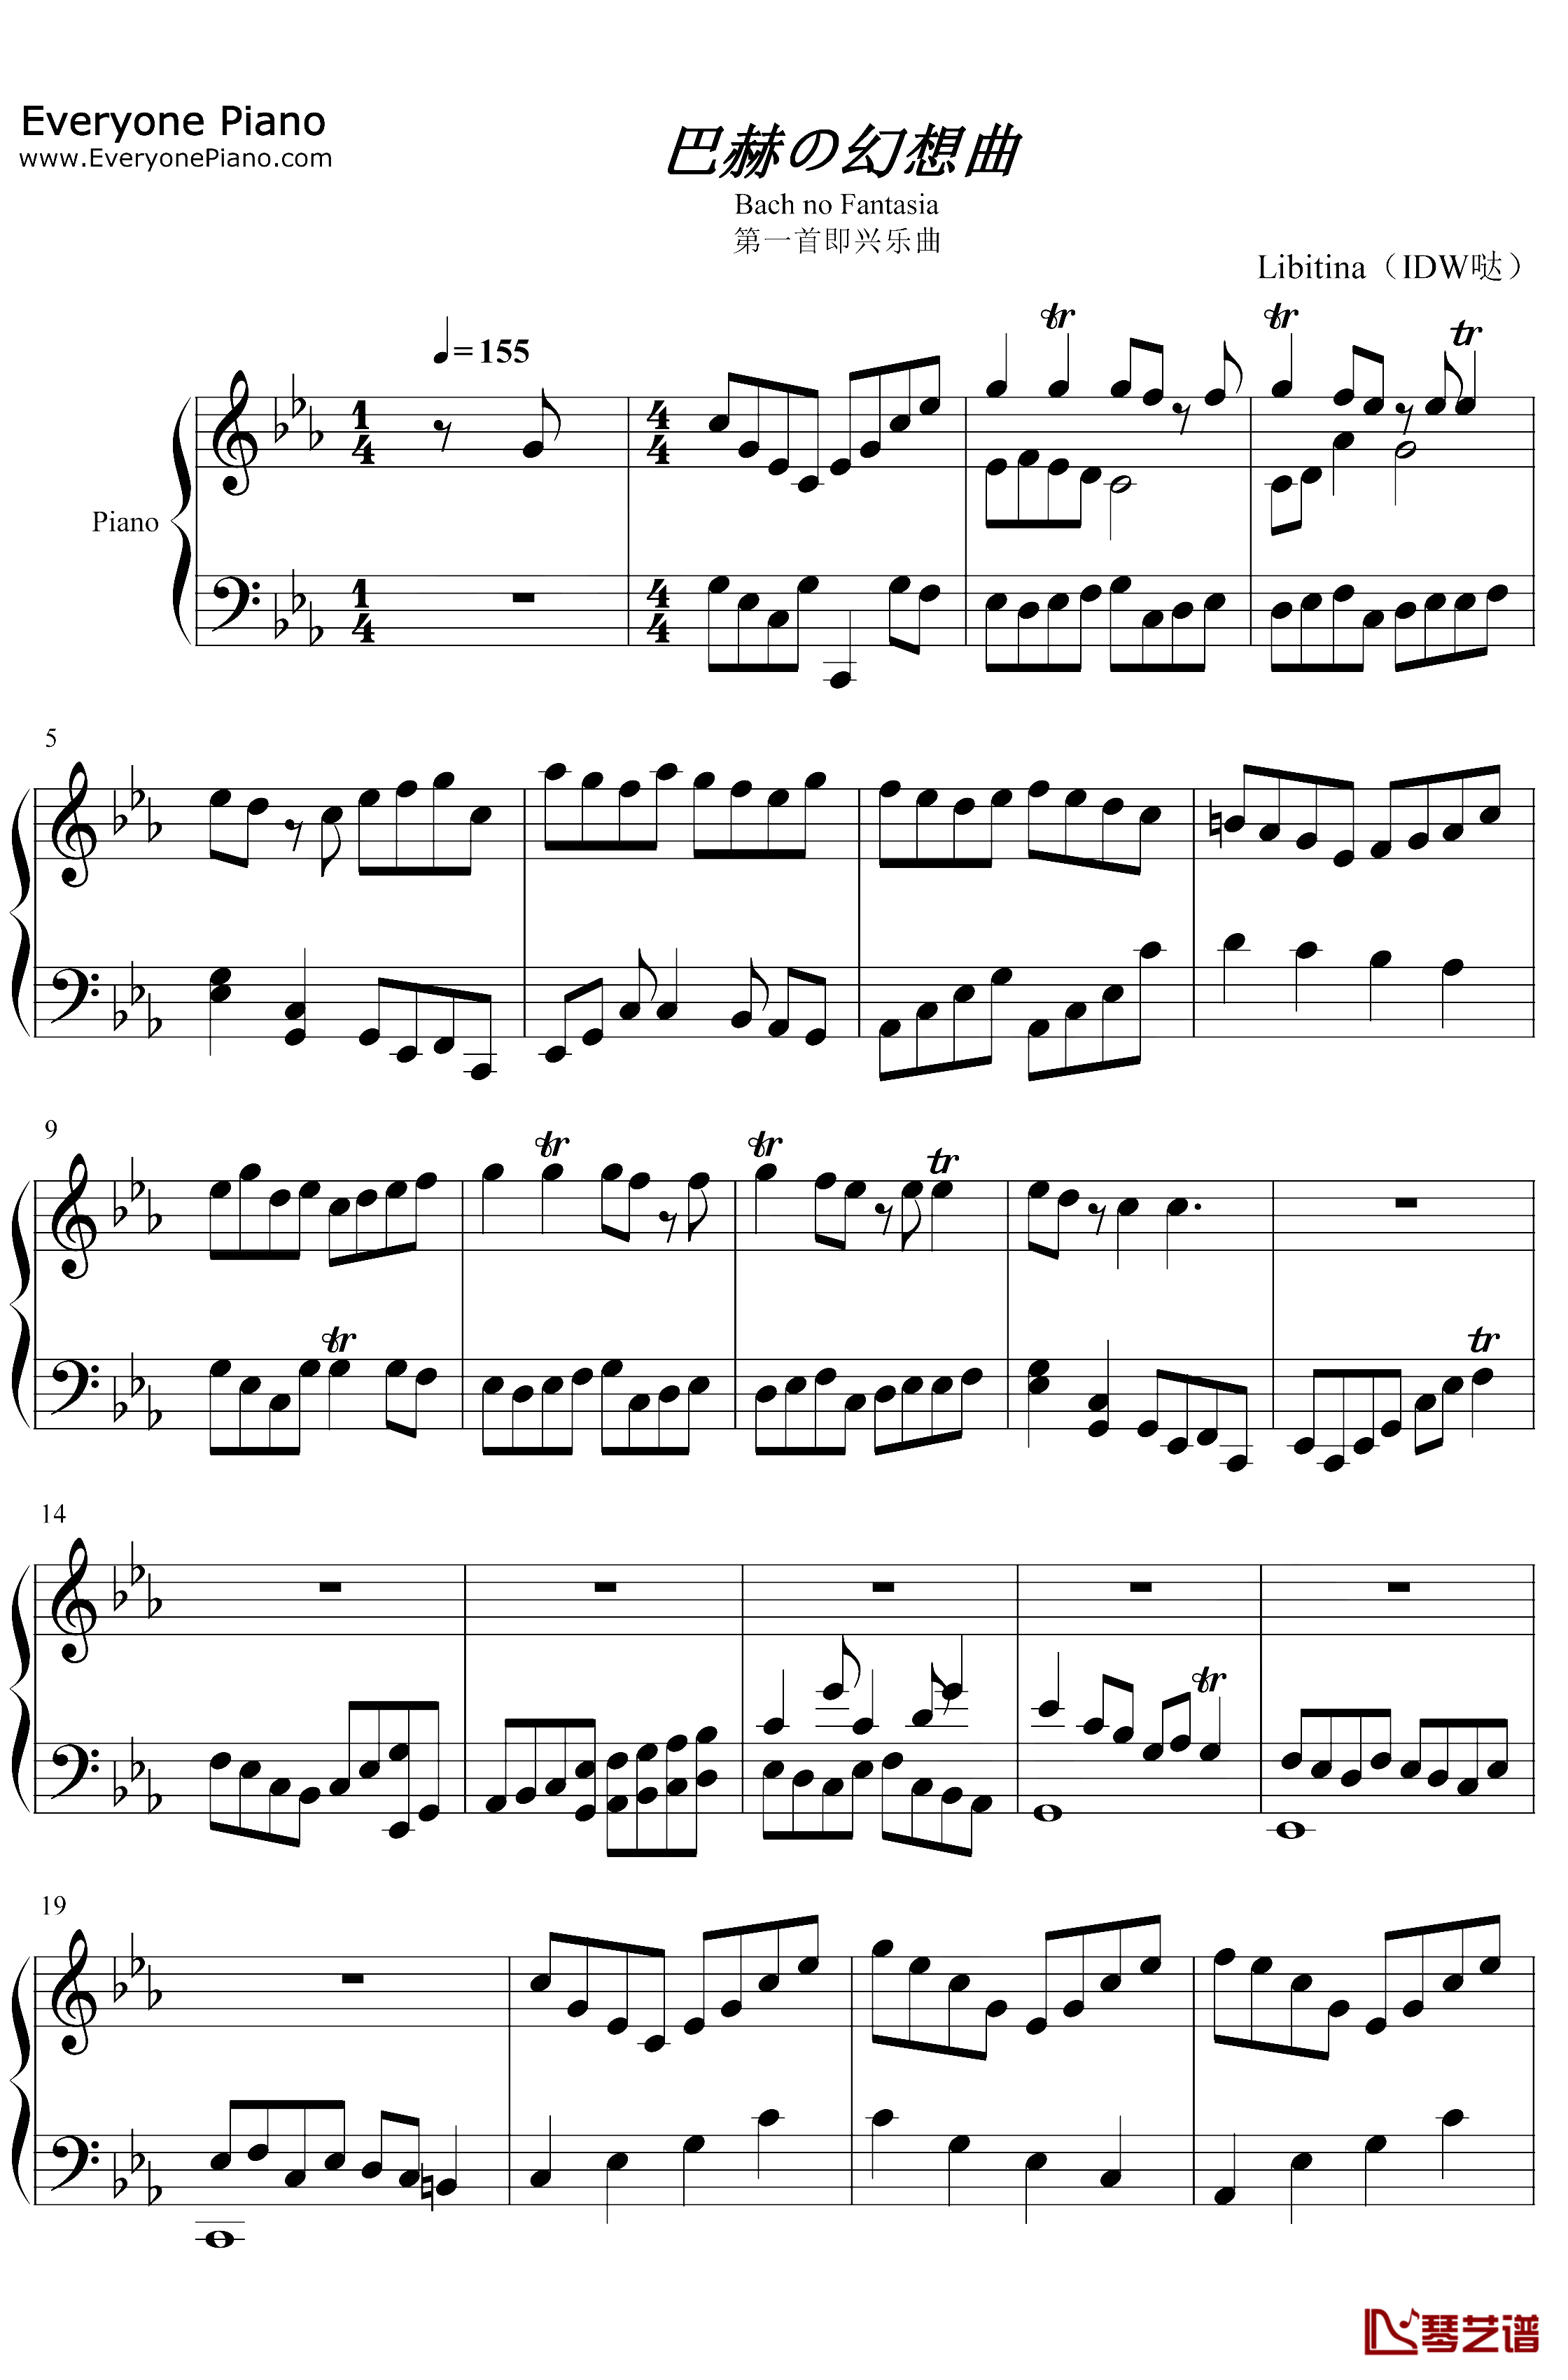 巴赫の幻想曲钢琴谱-IDW哒-原创音乐1